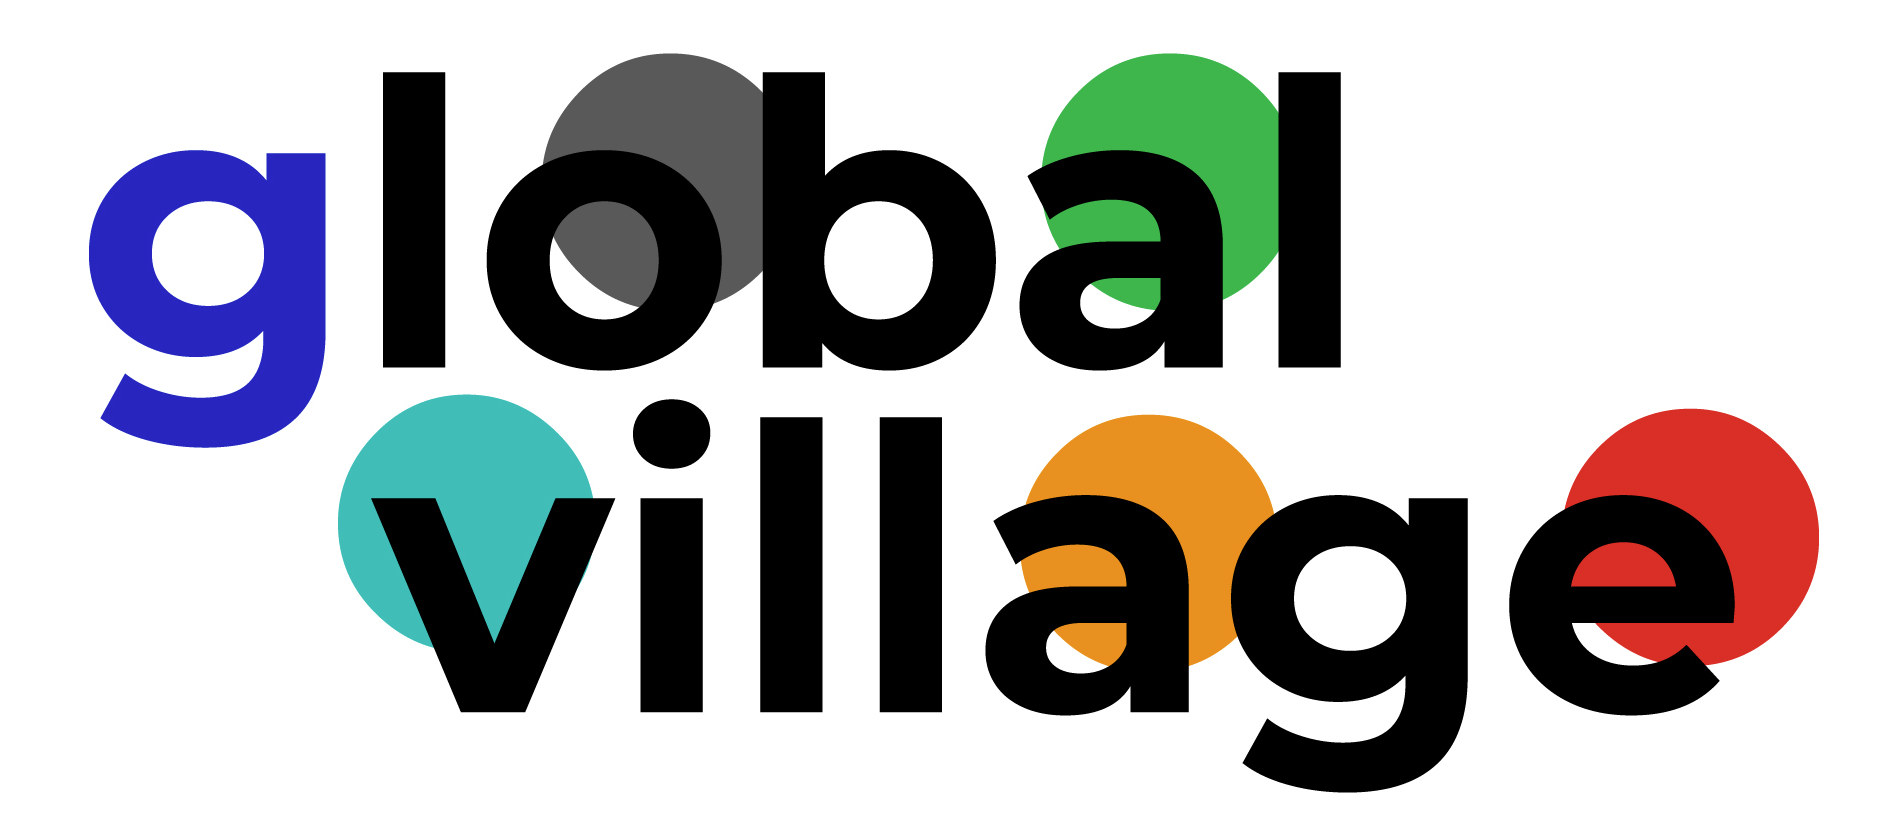 Global Village